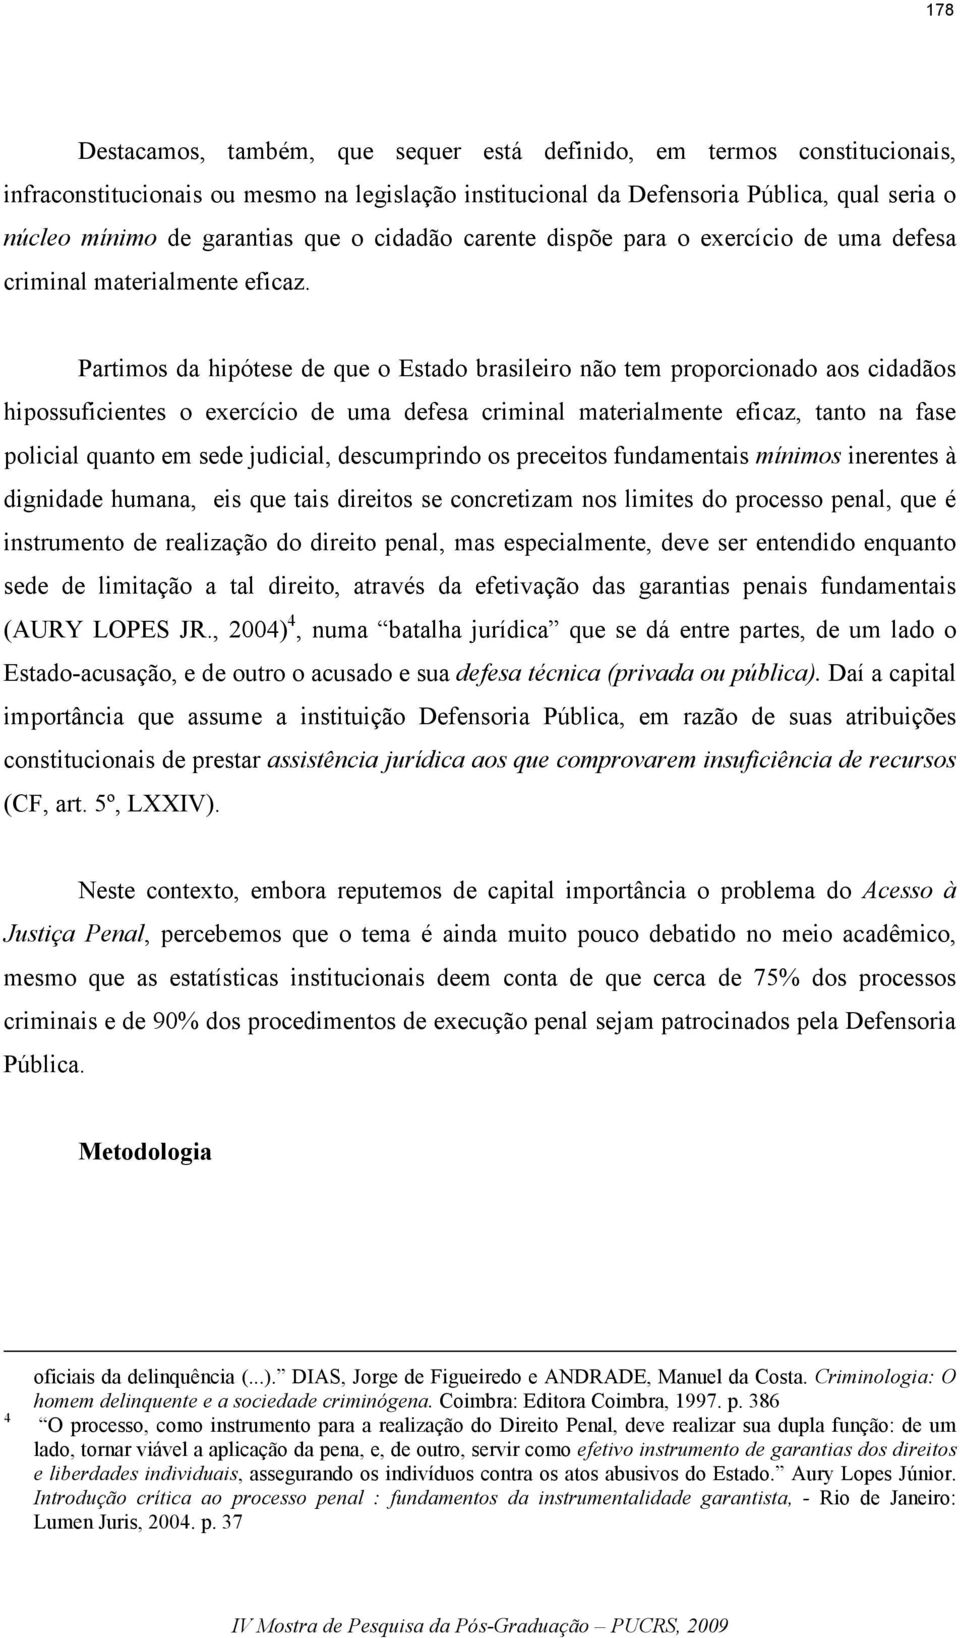 Partimos da hipótese de que o Estado brasileiro não tem proporcionado aos cidadãos hipossuficientes o exercício de uma defesa criminal materialmente eficaz, tanto na fase policial quanto em sede